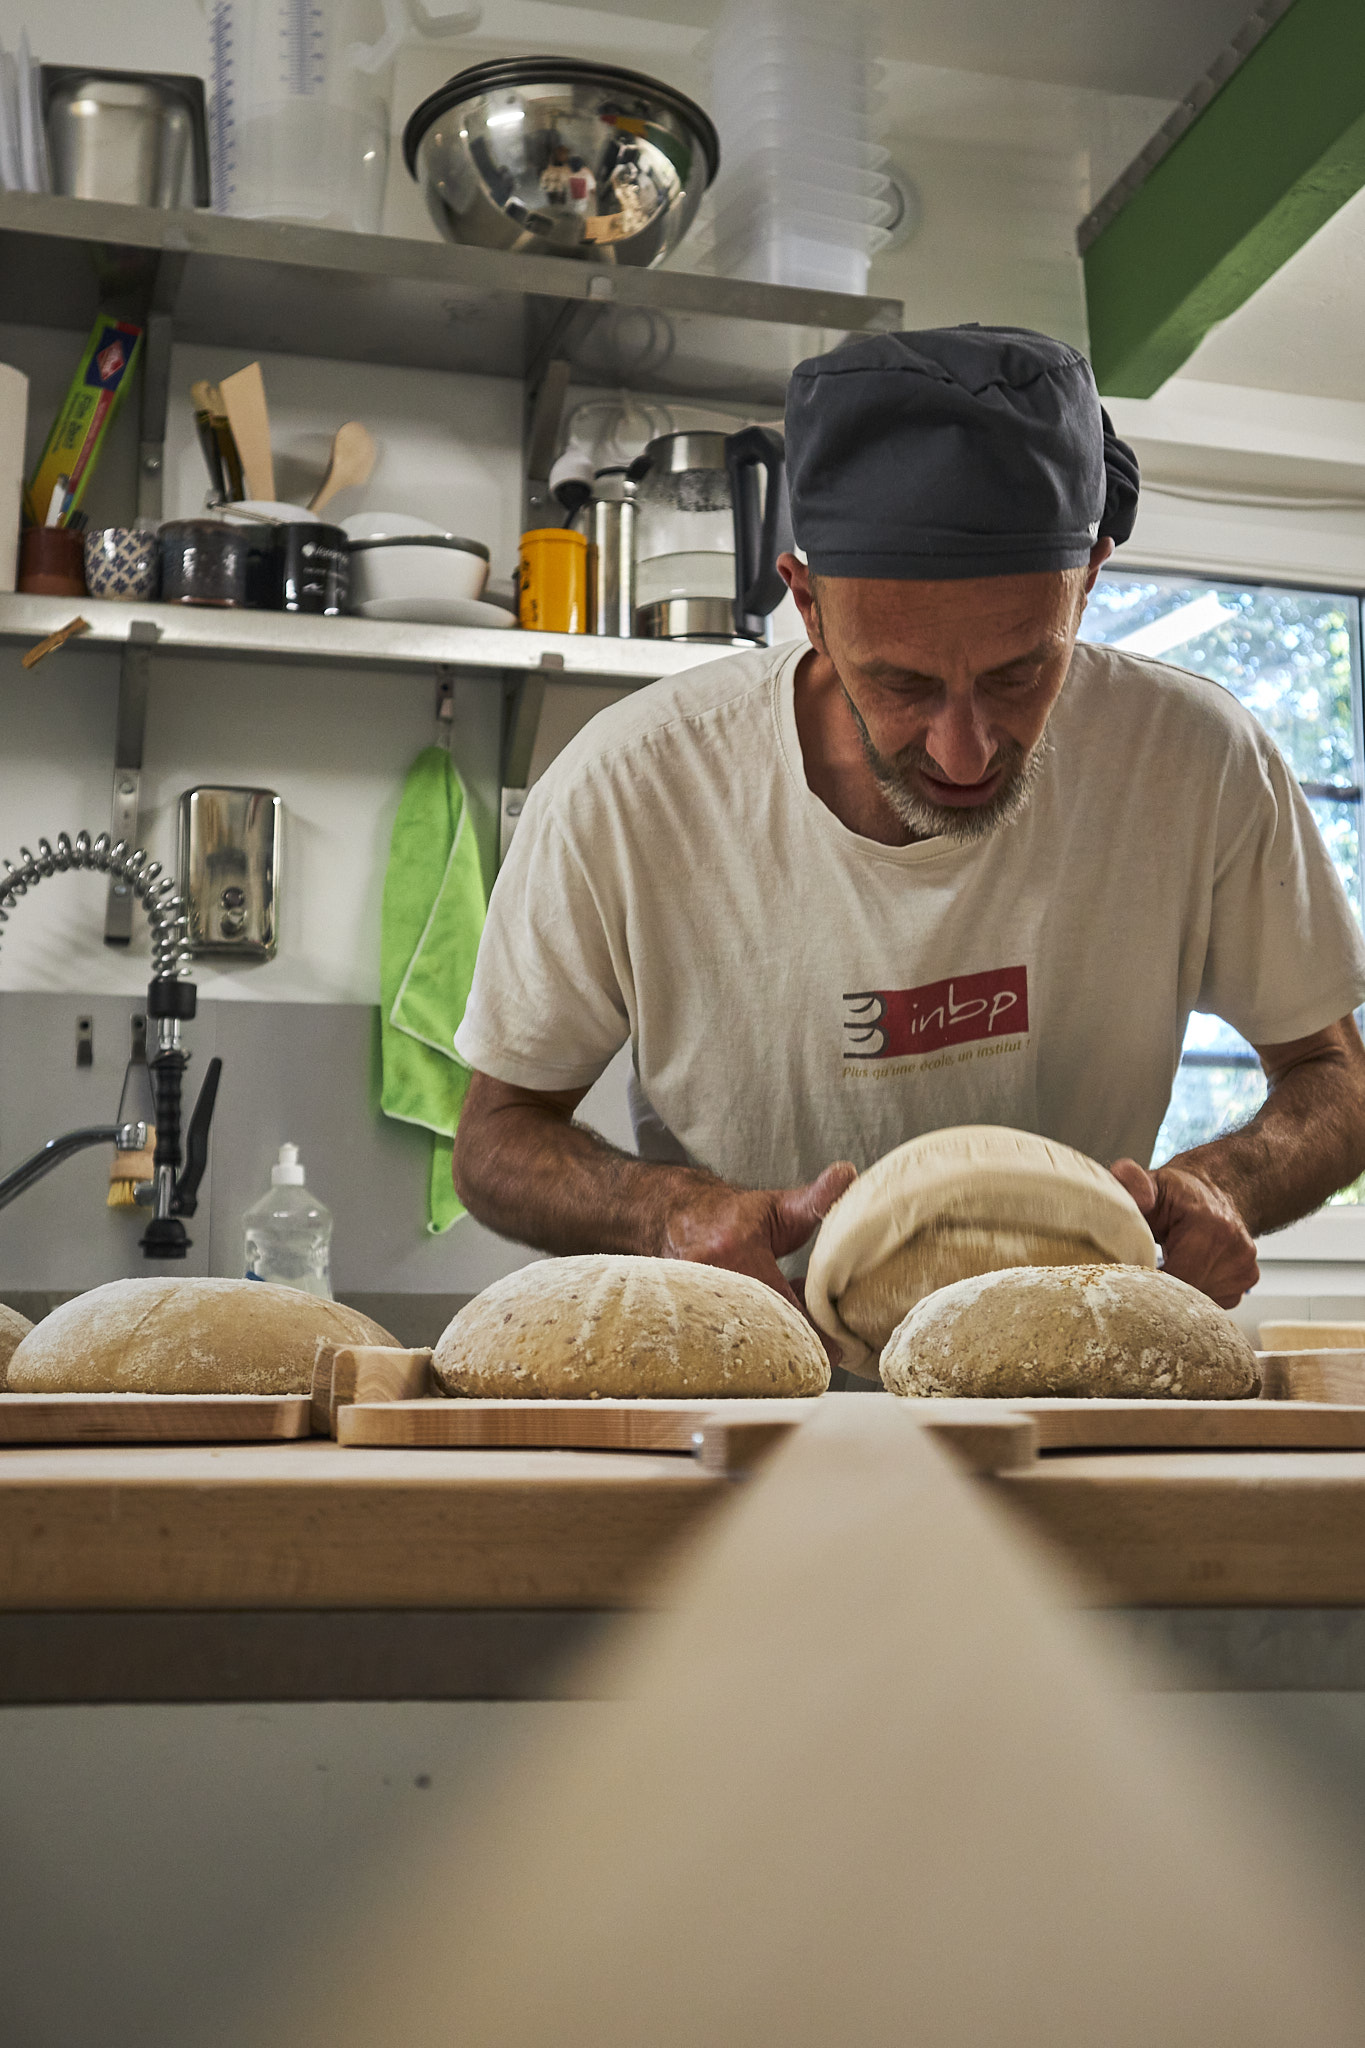 Enfournement - Boulangerie au levain Guérande, La Baule - La Mie de La Terre